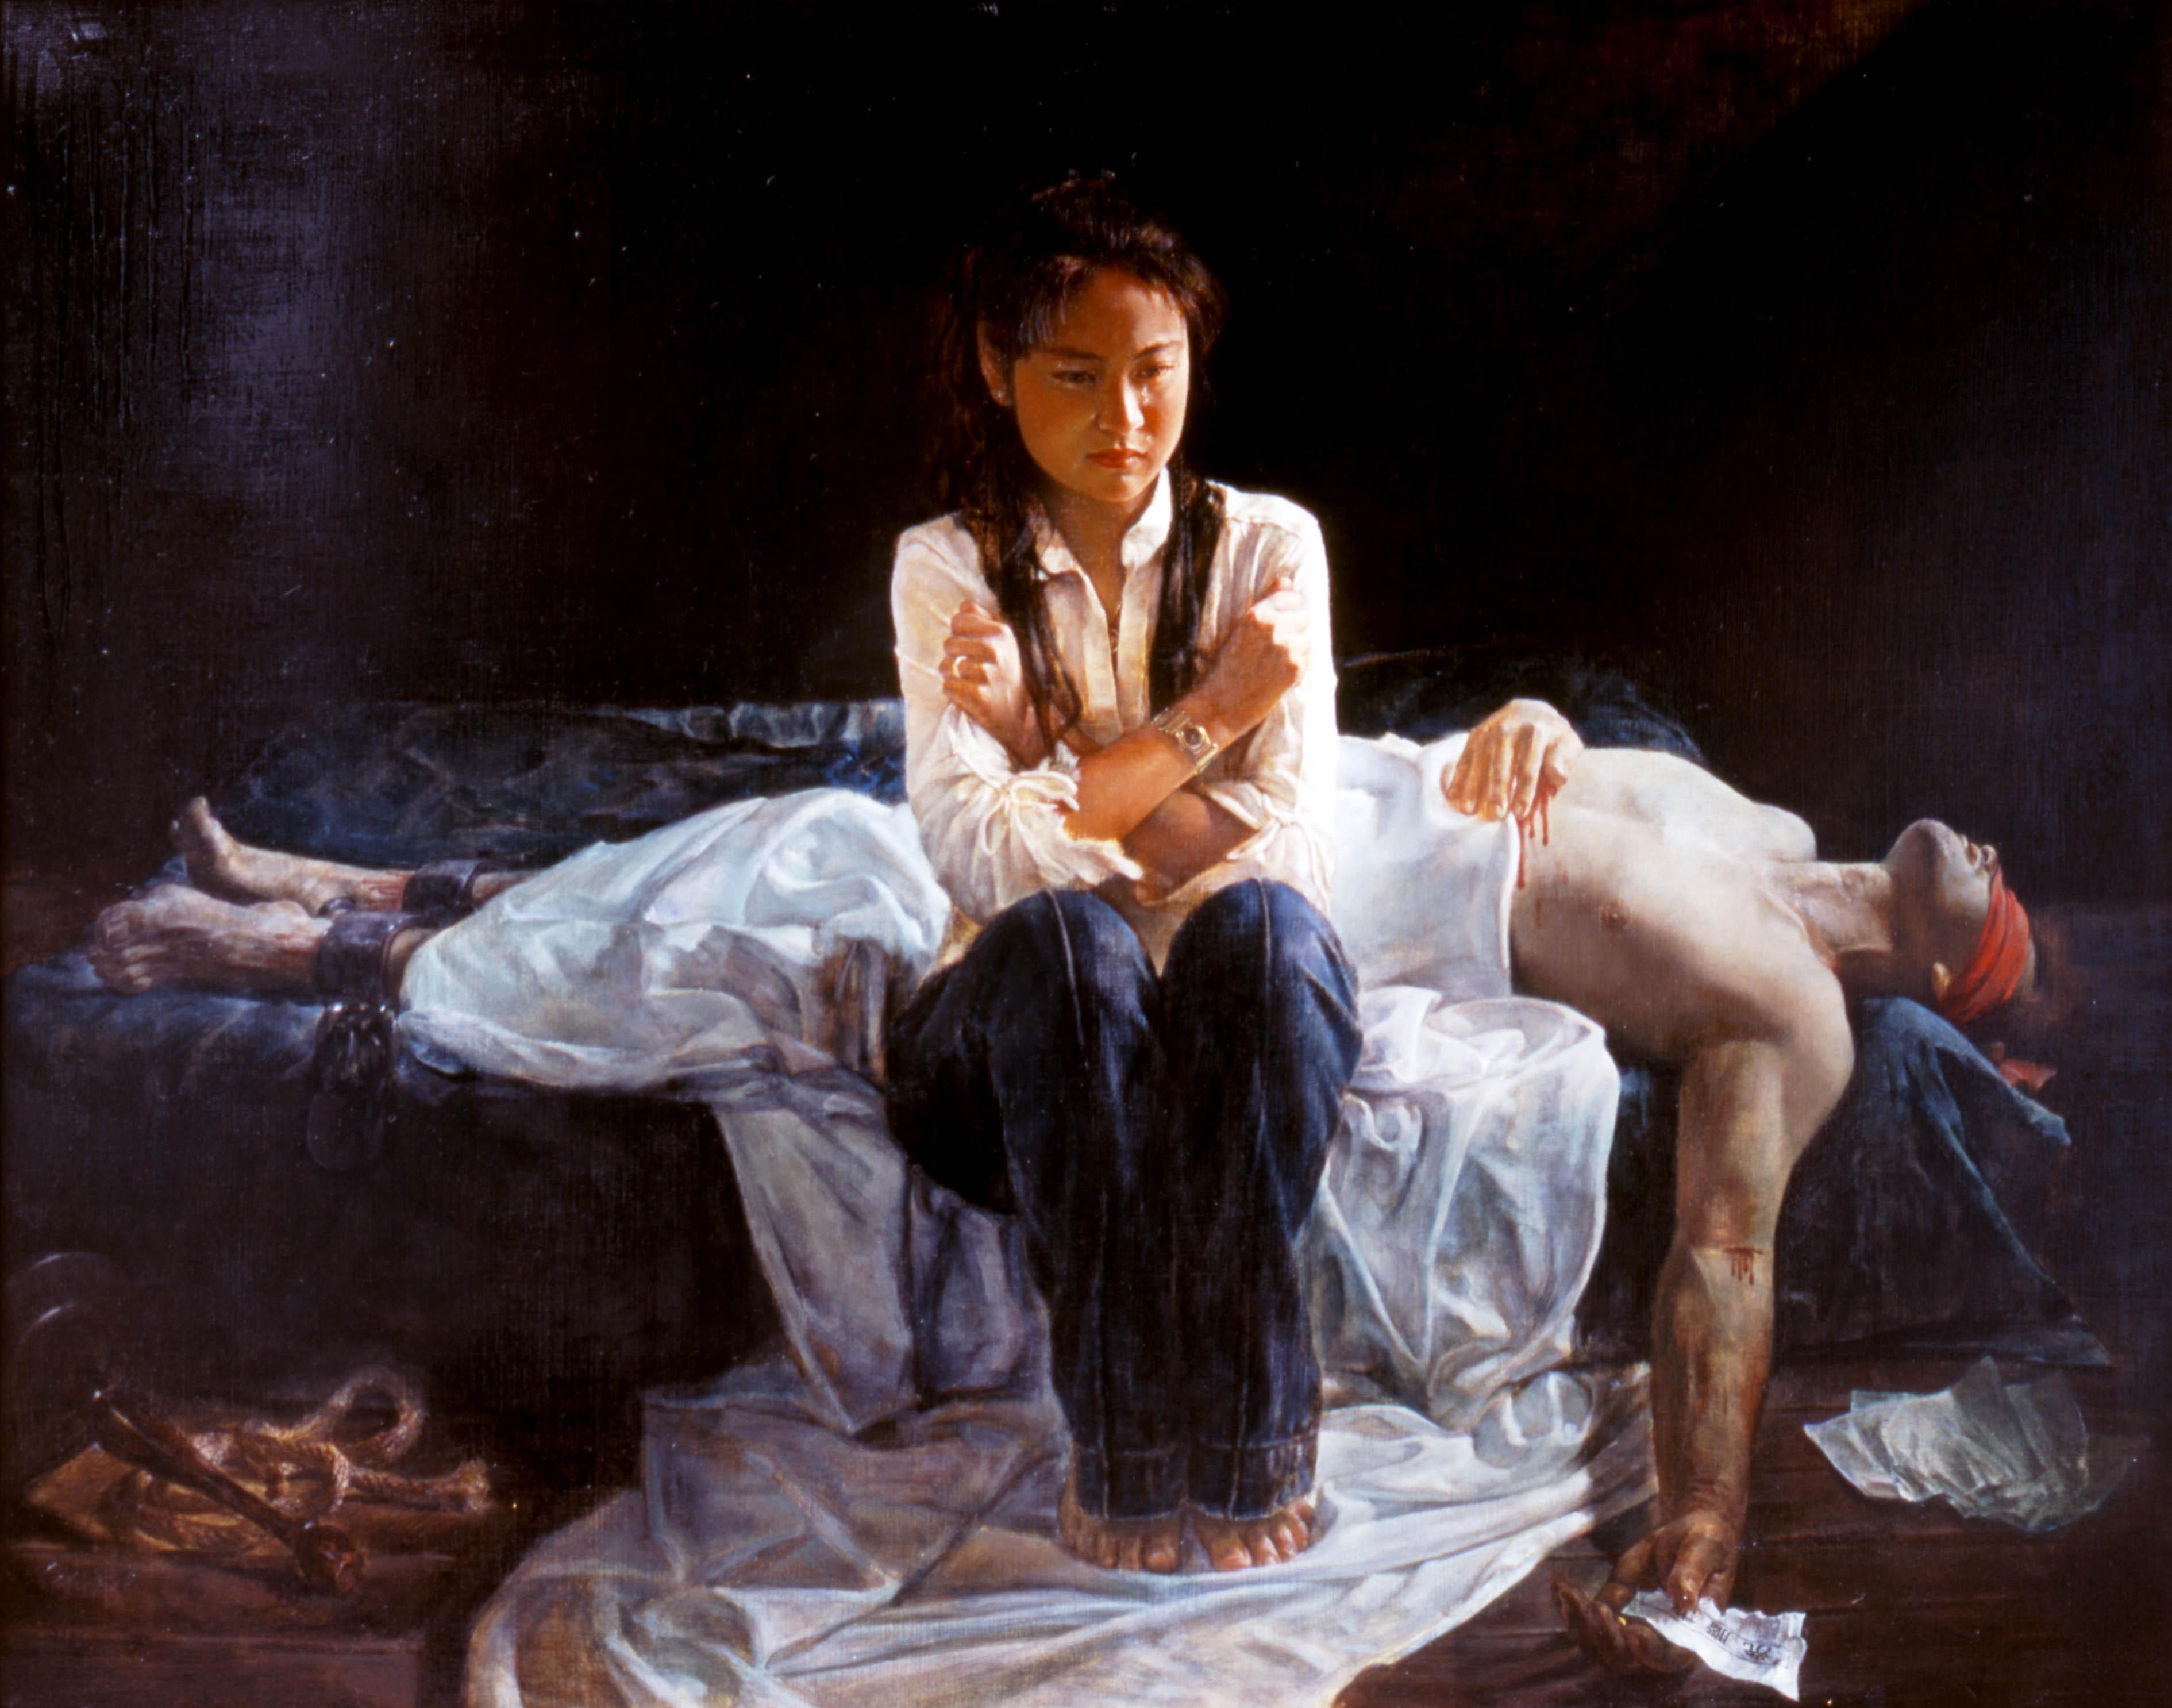 "Tragedi i Kina", av Li Yuan, en av tavlorna från utställningen "The Art of Zhen Shan Ren". (Pressbild)